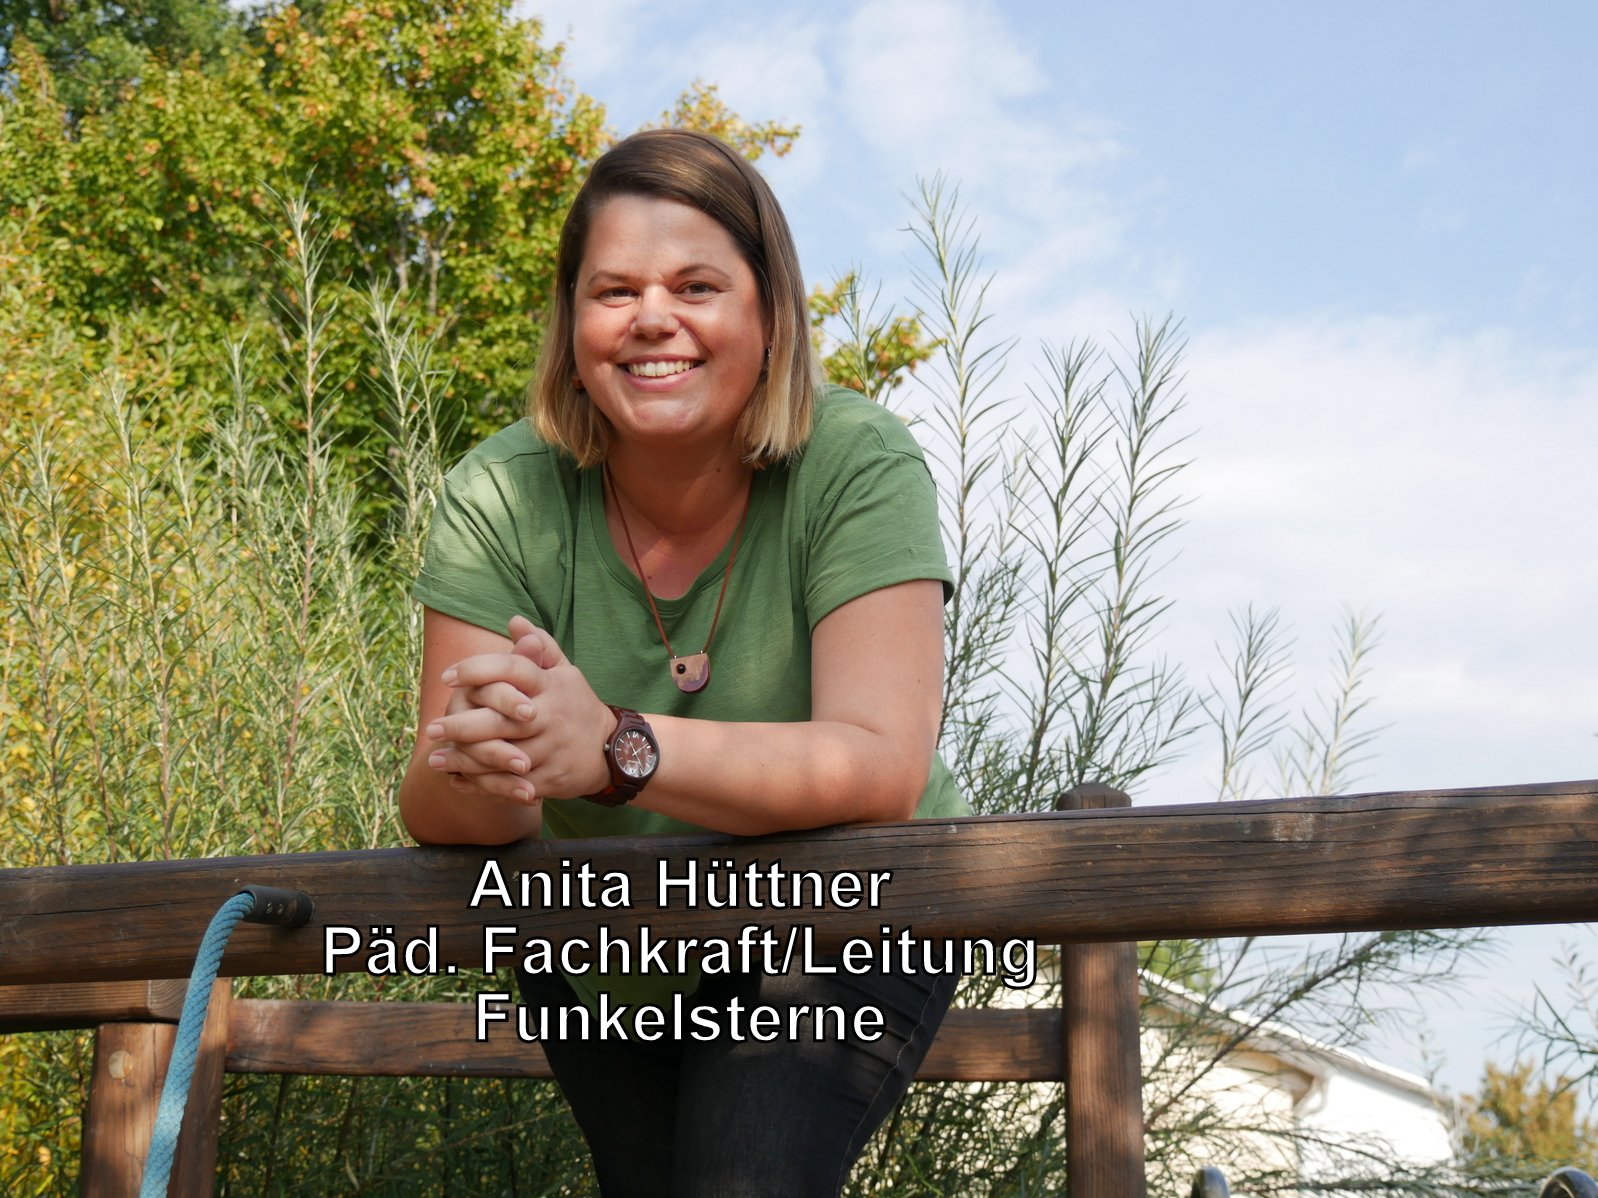 Anita Hüttner